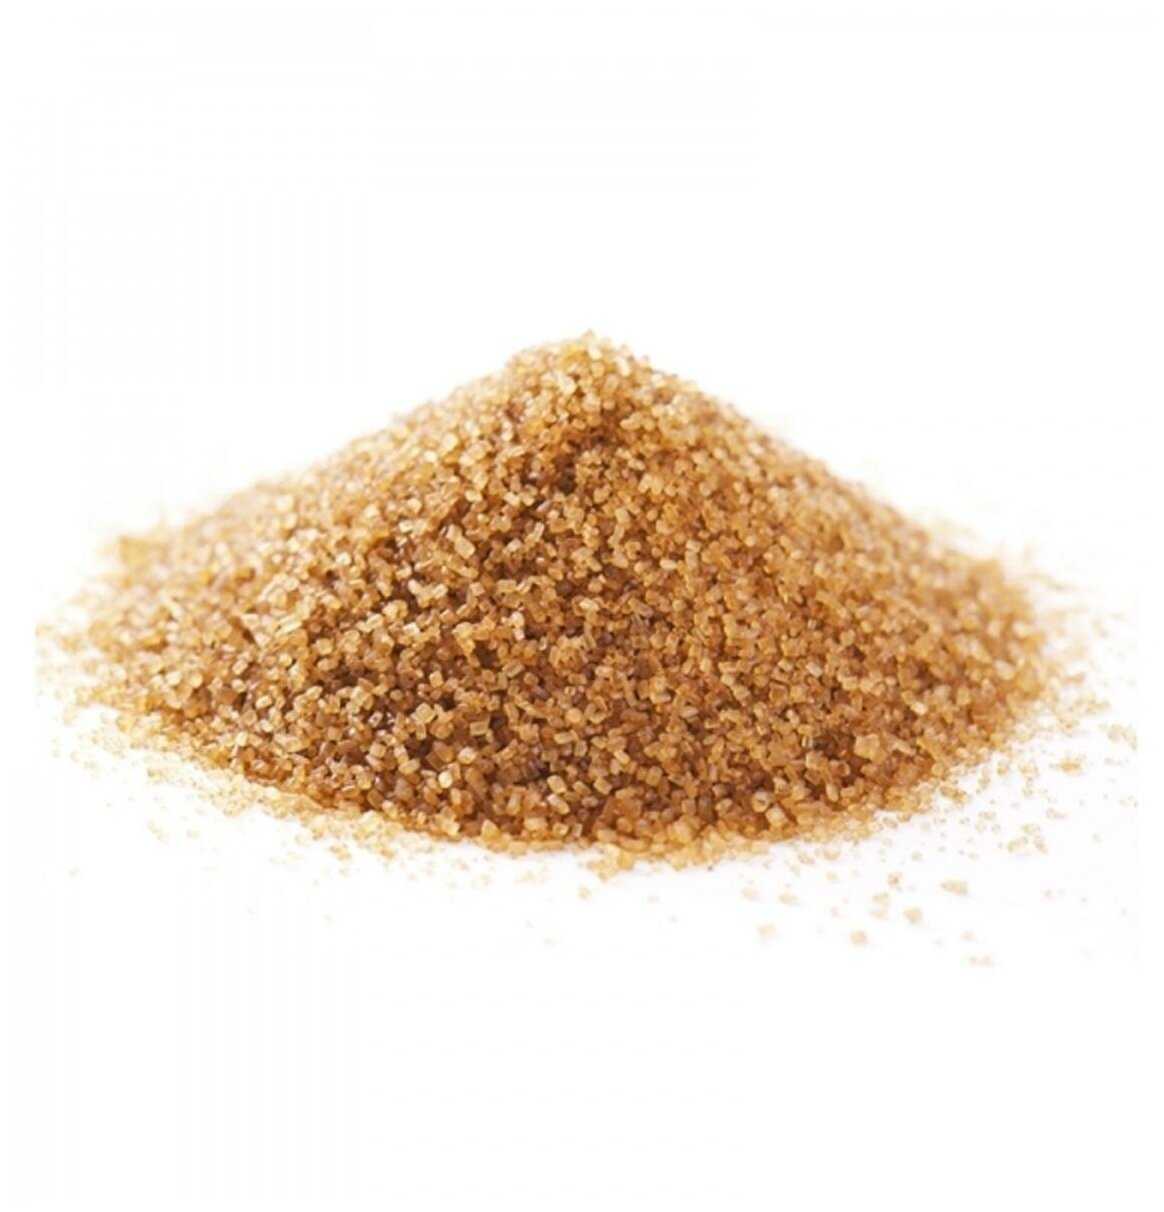 Калорийность сахара на 100 грамм, сколько калорий и бжу в 1 чайной ложке сахарного песка